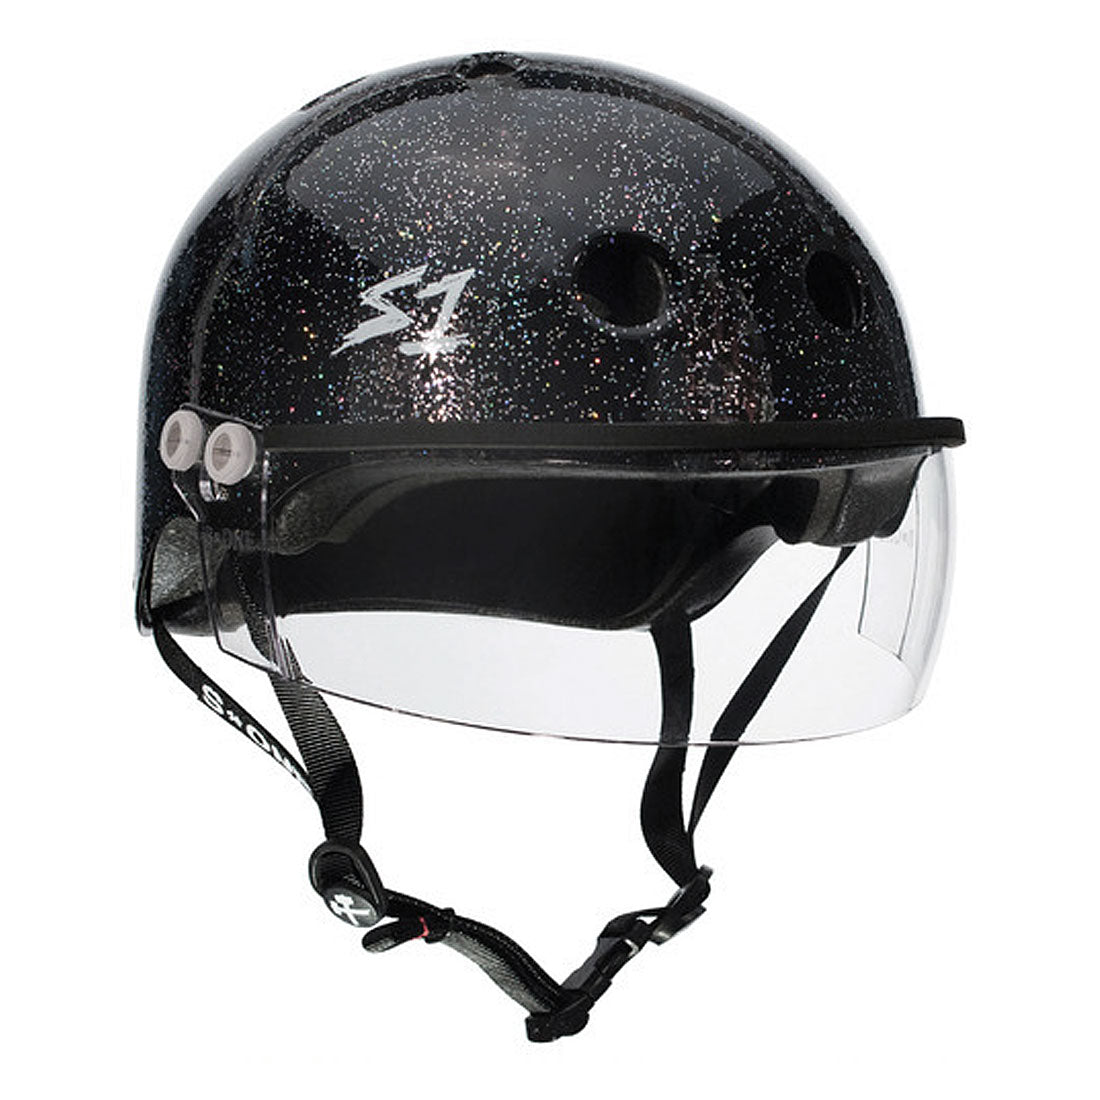 S-One Visor Lifer Helmet - Black Glitter Helmets